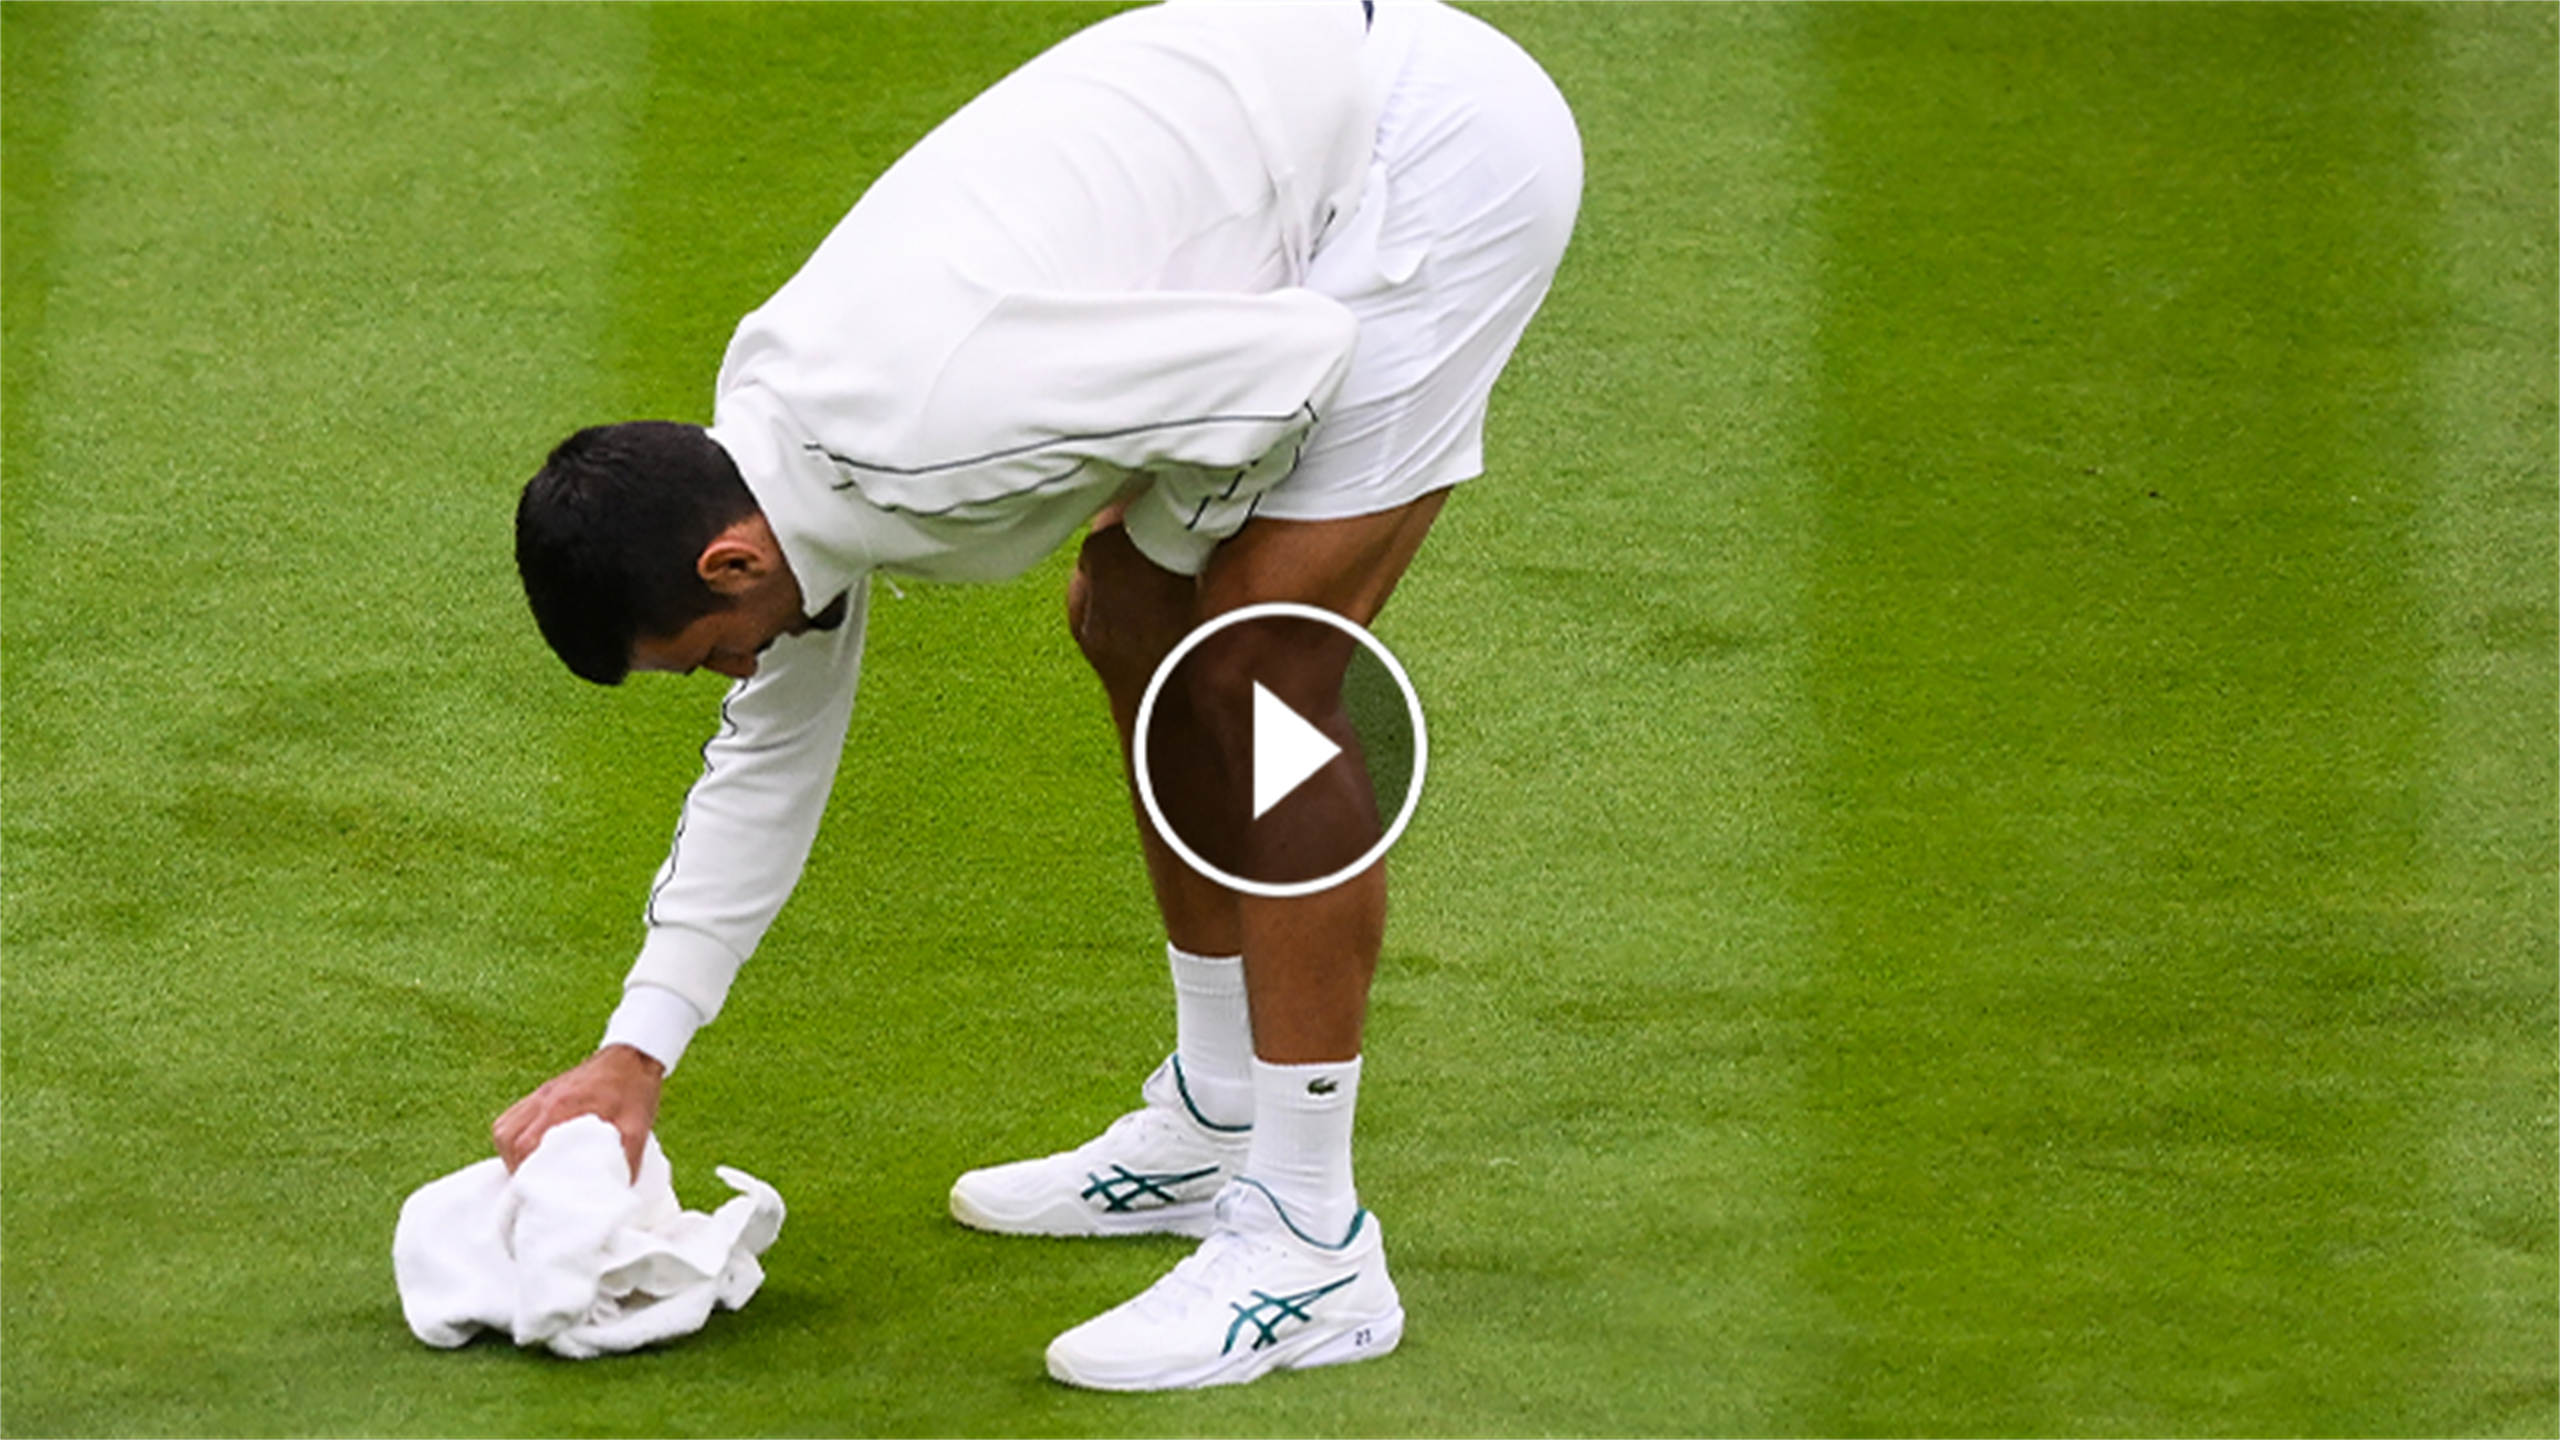 Djokovic tuttofare: dopo la pioggia, esce dagli spogliatoi e asciuga l'erba